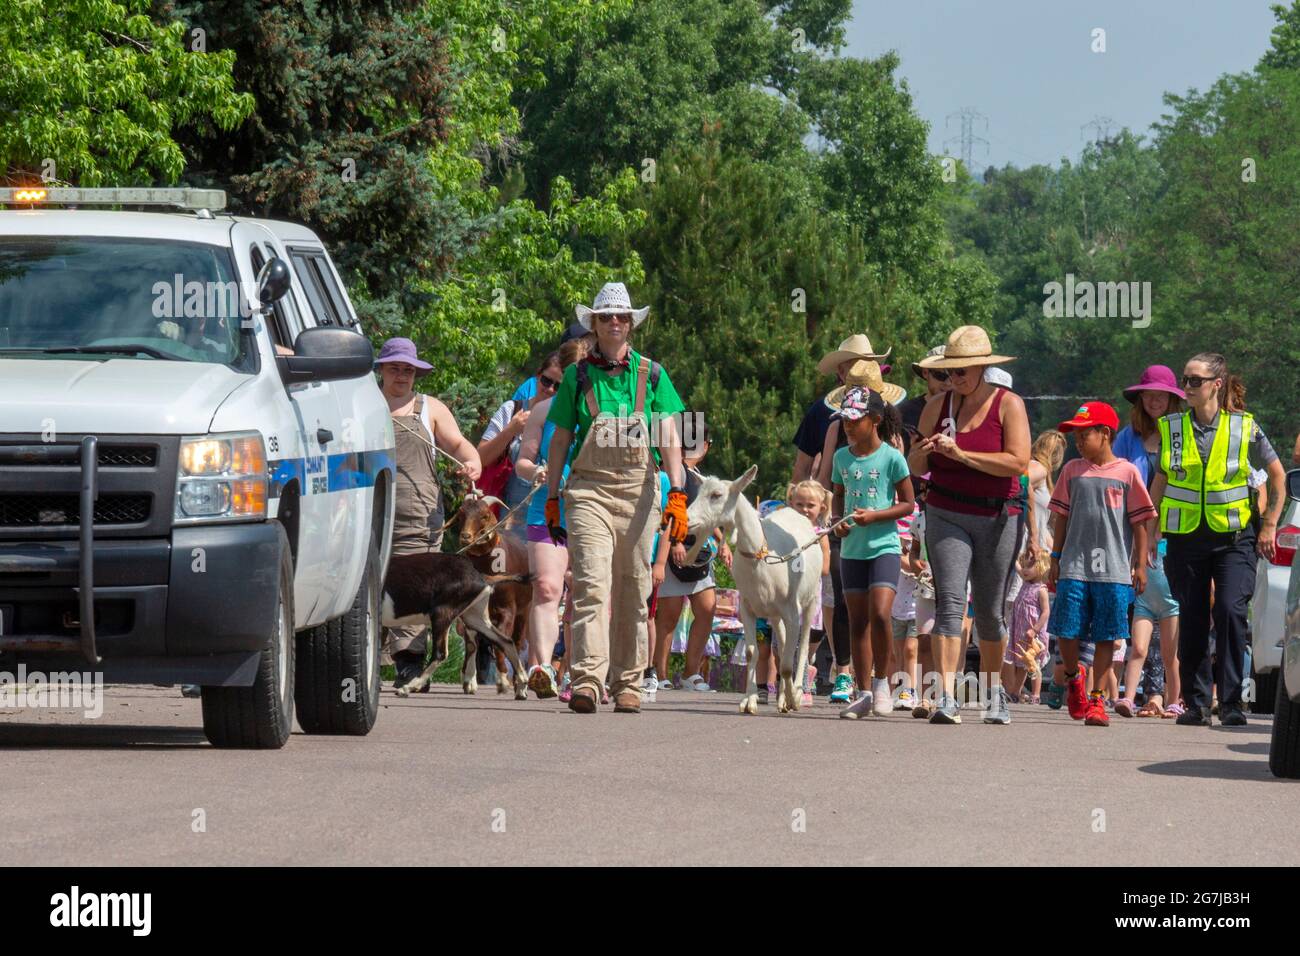 Wheat Ridge, Colorado - accompagné d'enfants et d'adultes admiratifs, chèvres de 5 Frise Farm parade au parc Lewis Meadows où ils seront admis Banque D'Images